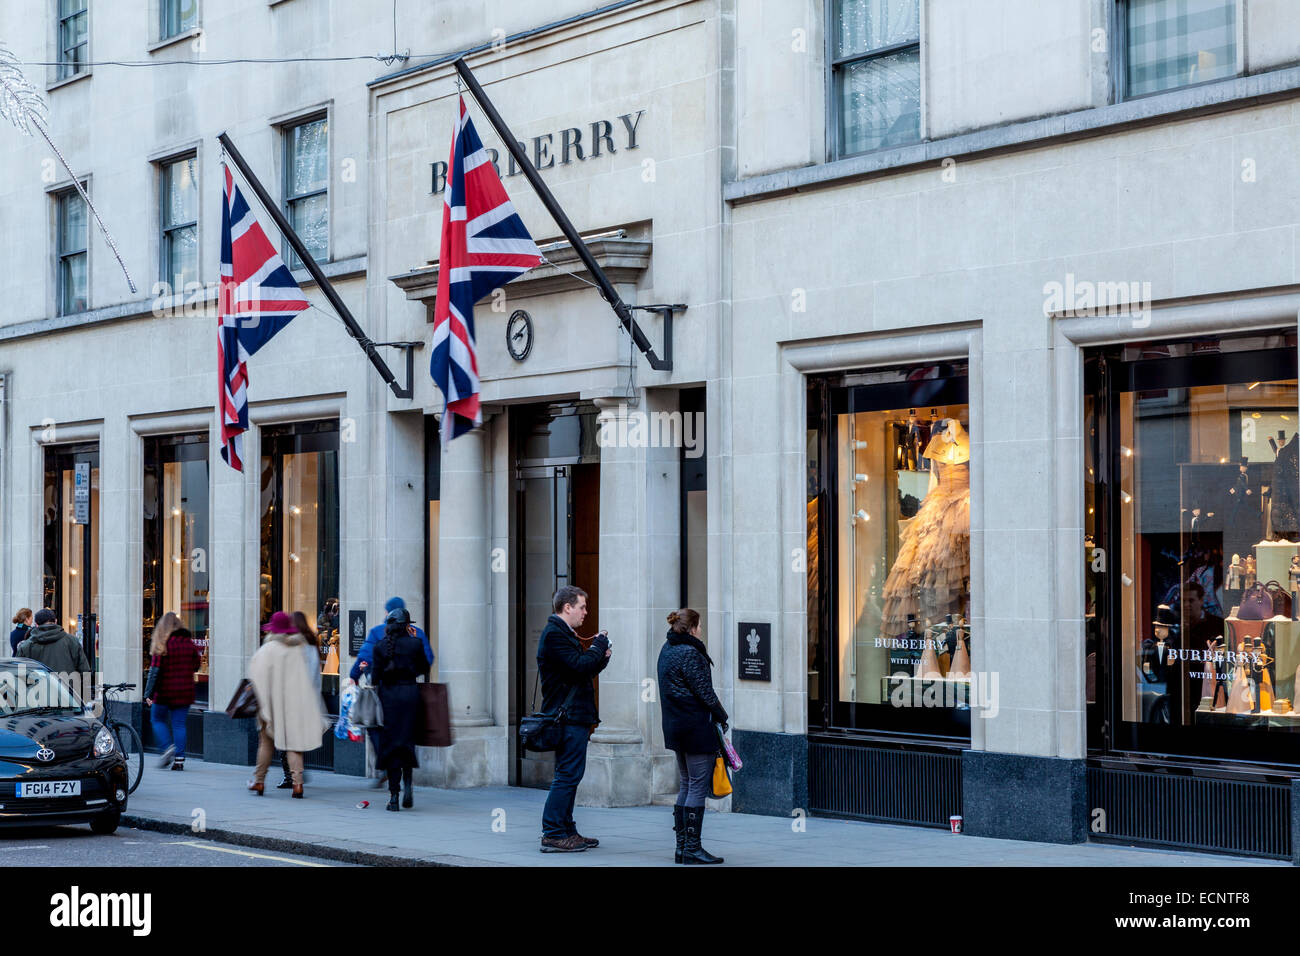 La Boutique Burberry à New Bond Street, Londres, Angleterre Banque D'Images